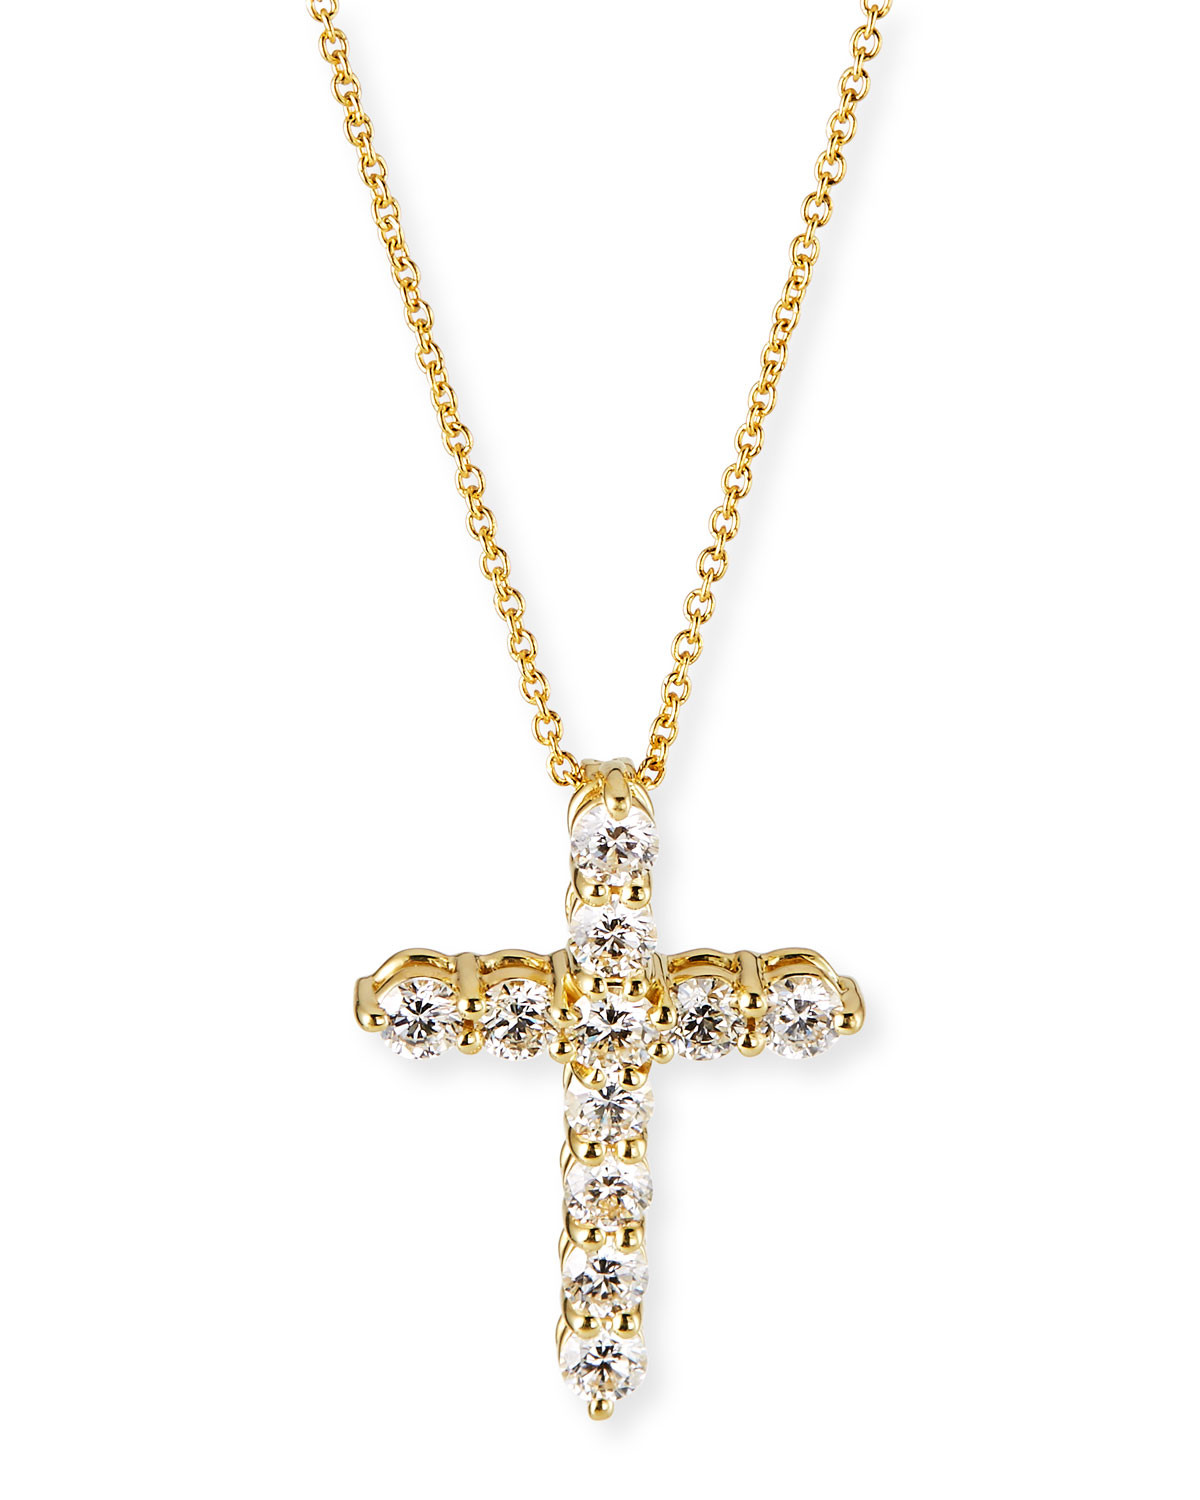 Small Diamond Cross Necklace
 Roberto Coin 18k Small Diamond Cross Necklace